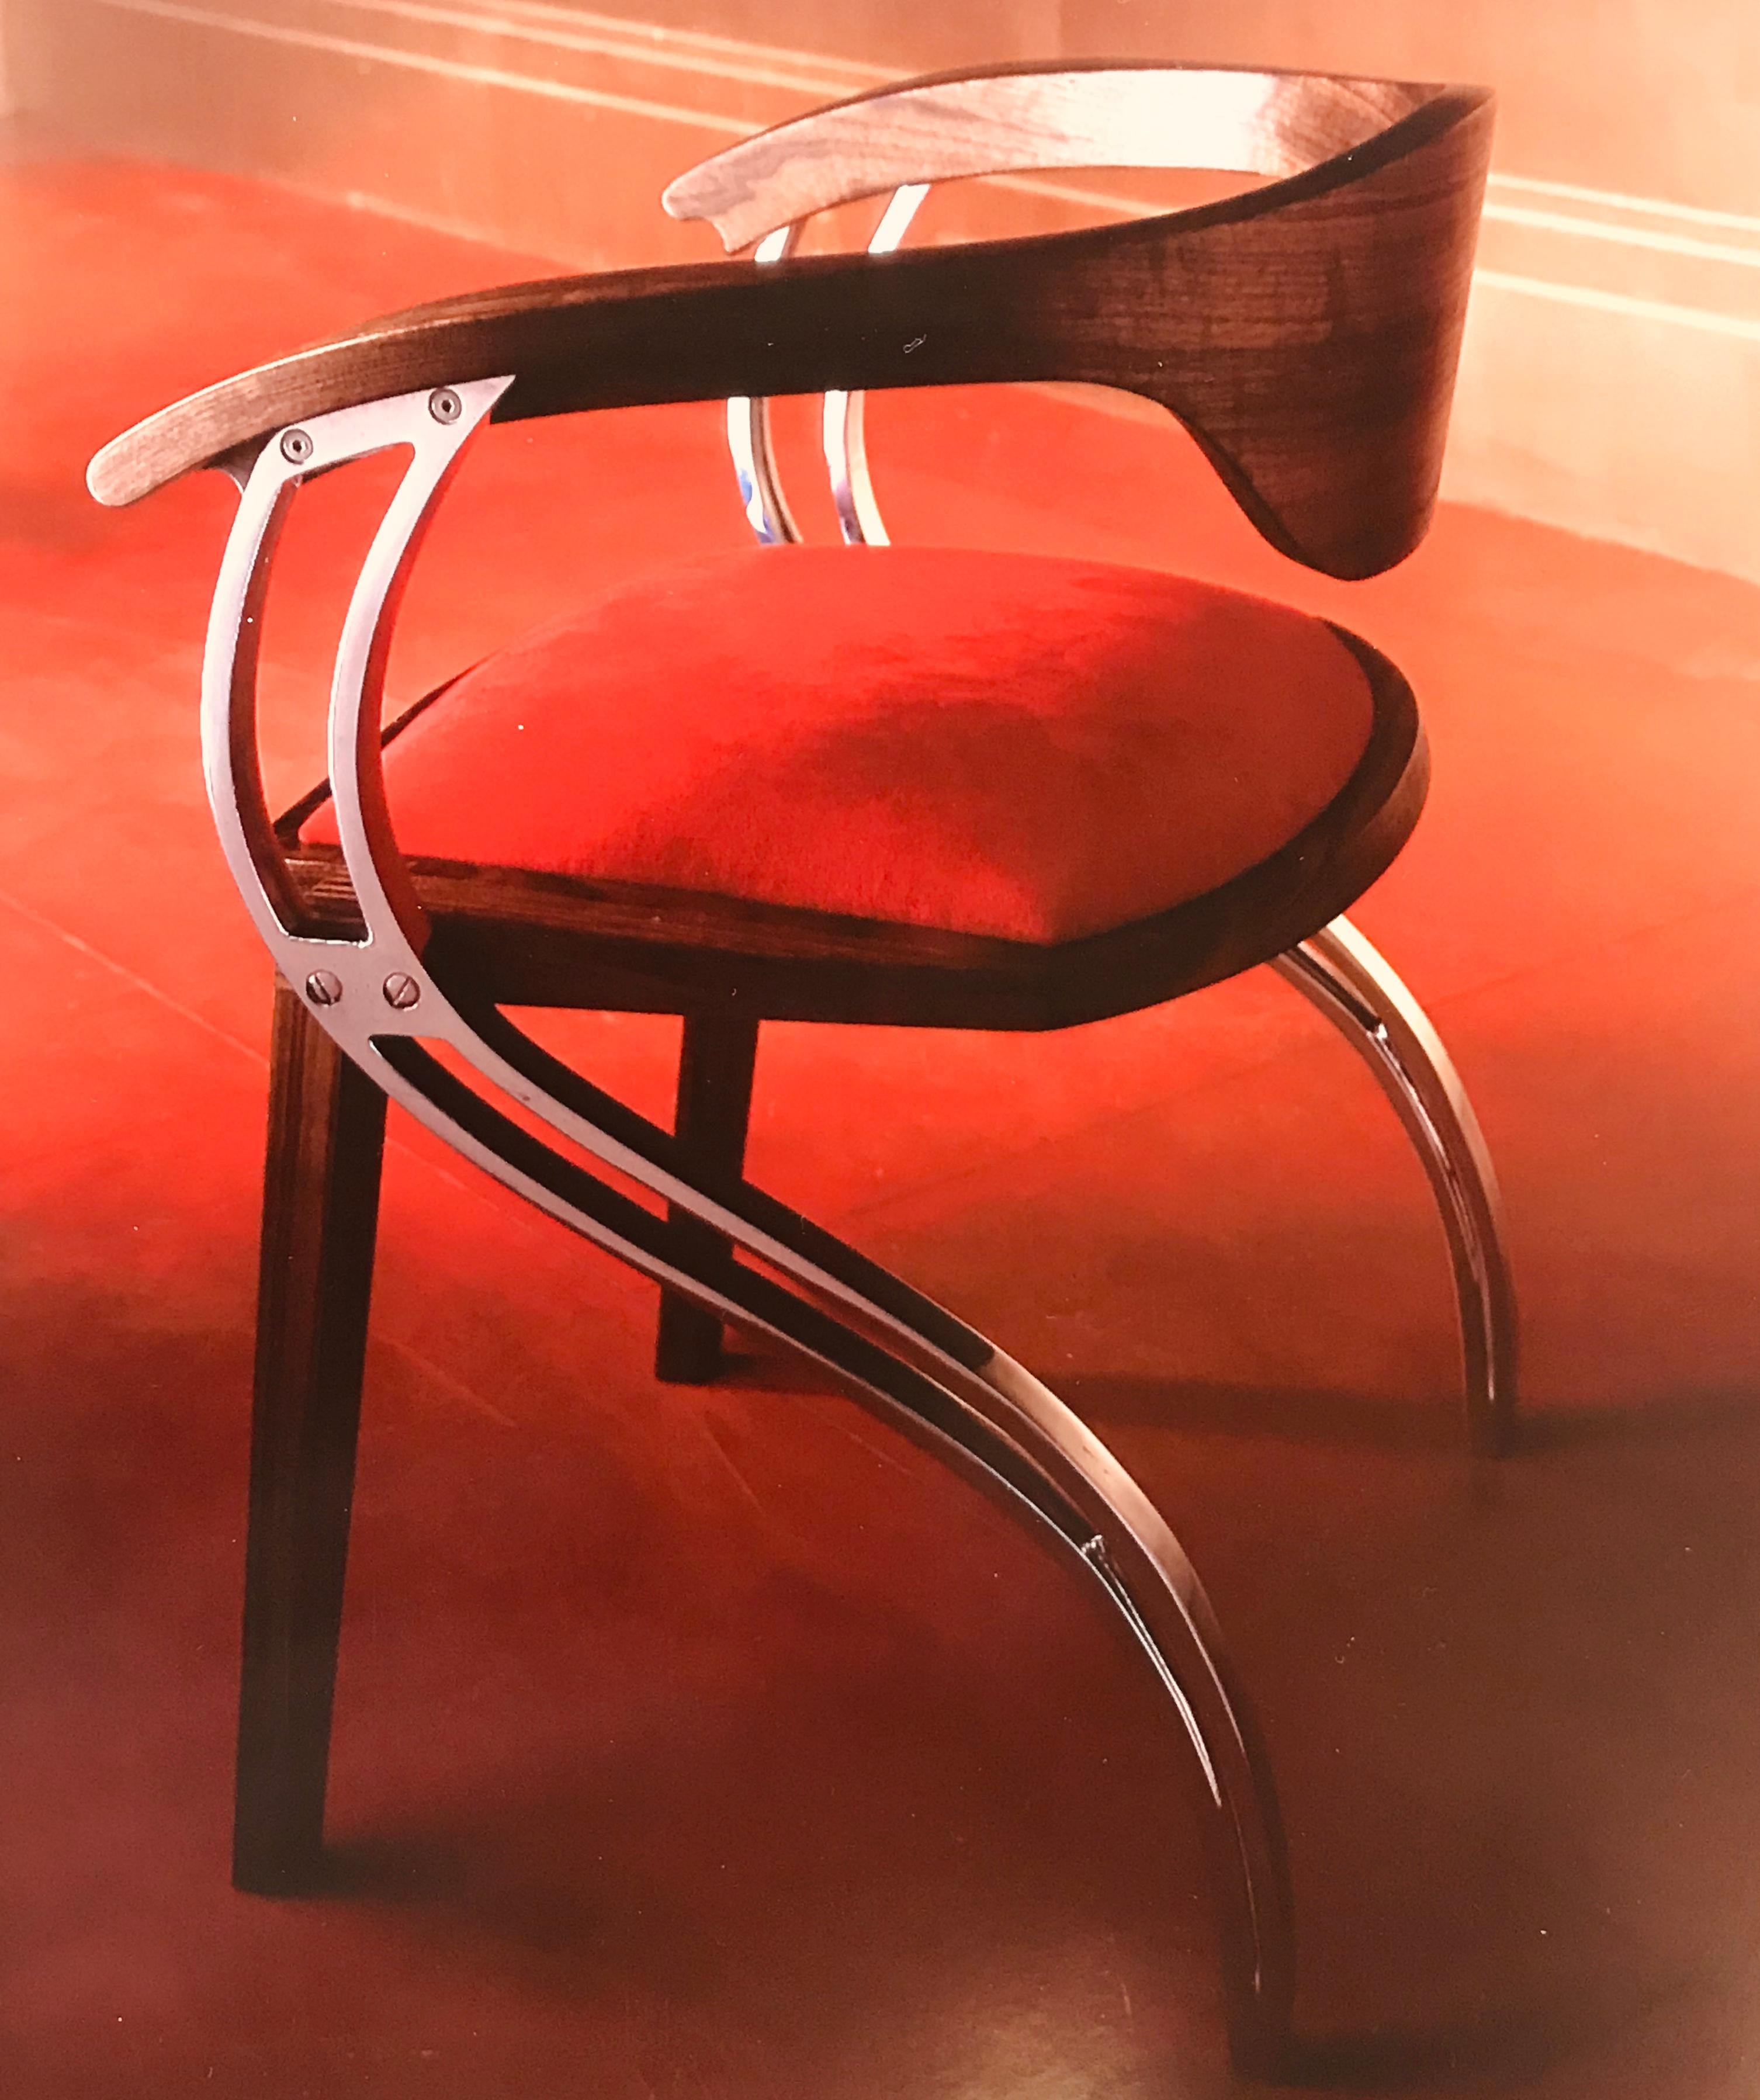 Dieser auf Bestellung gefertigte, elegante und anmutige, zeitgenössische Stuhl spielt mit Form und Funktion. Die S-förmigen Aluminiumbeine bilden seitliche Stützen, die die Sitzstruktur und die 